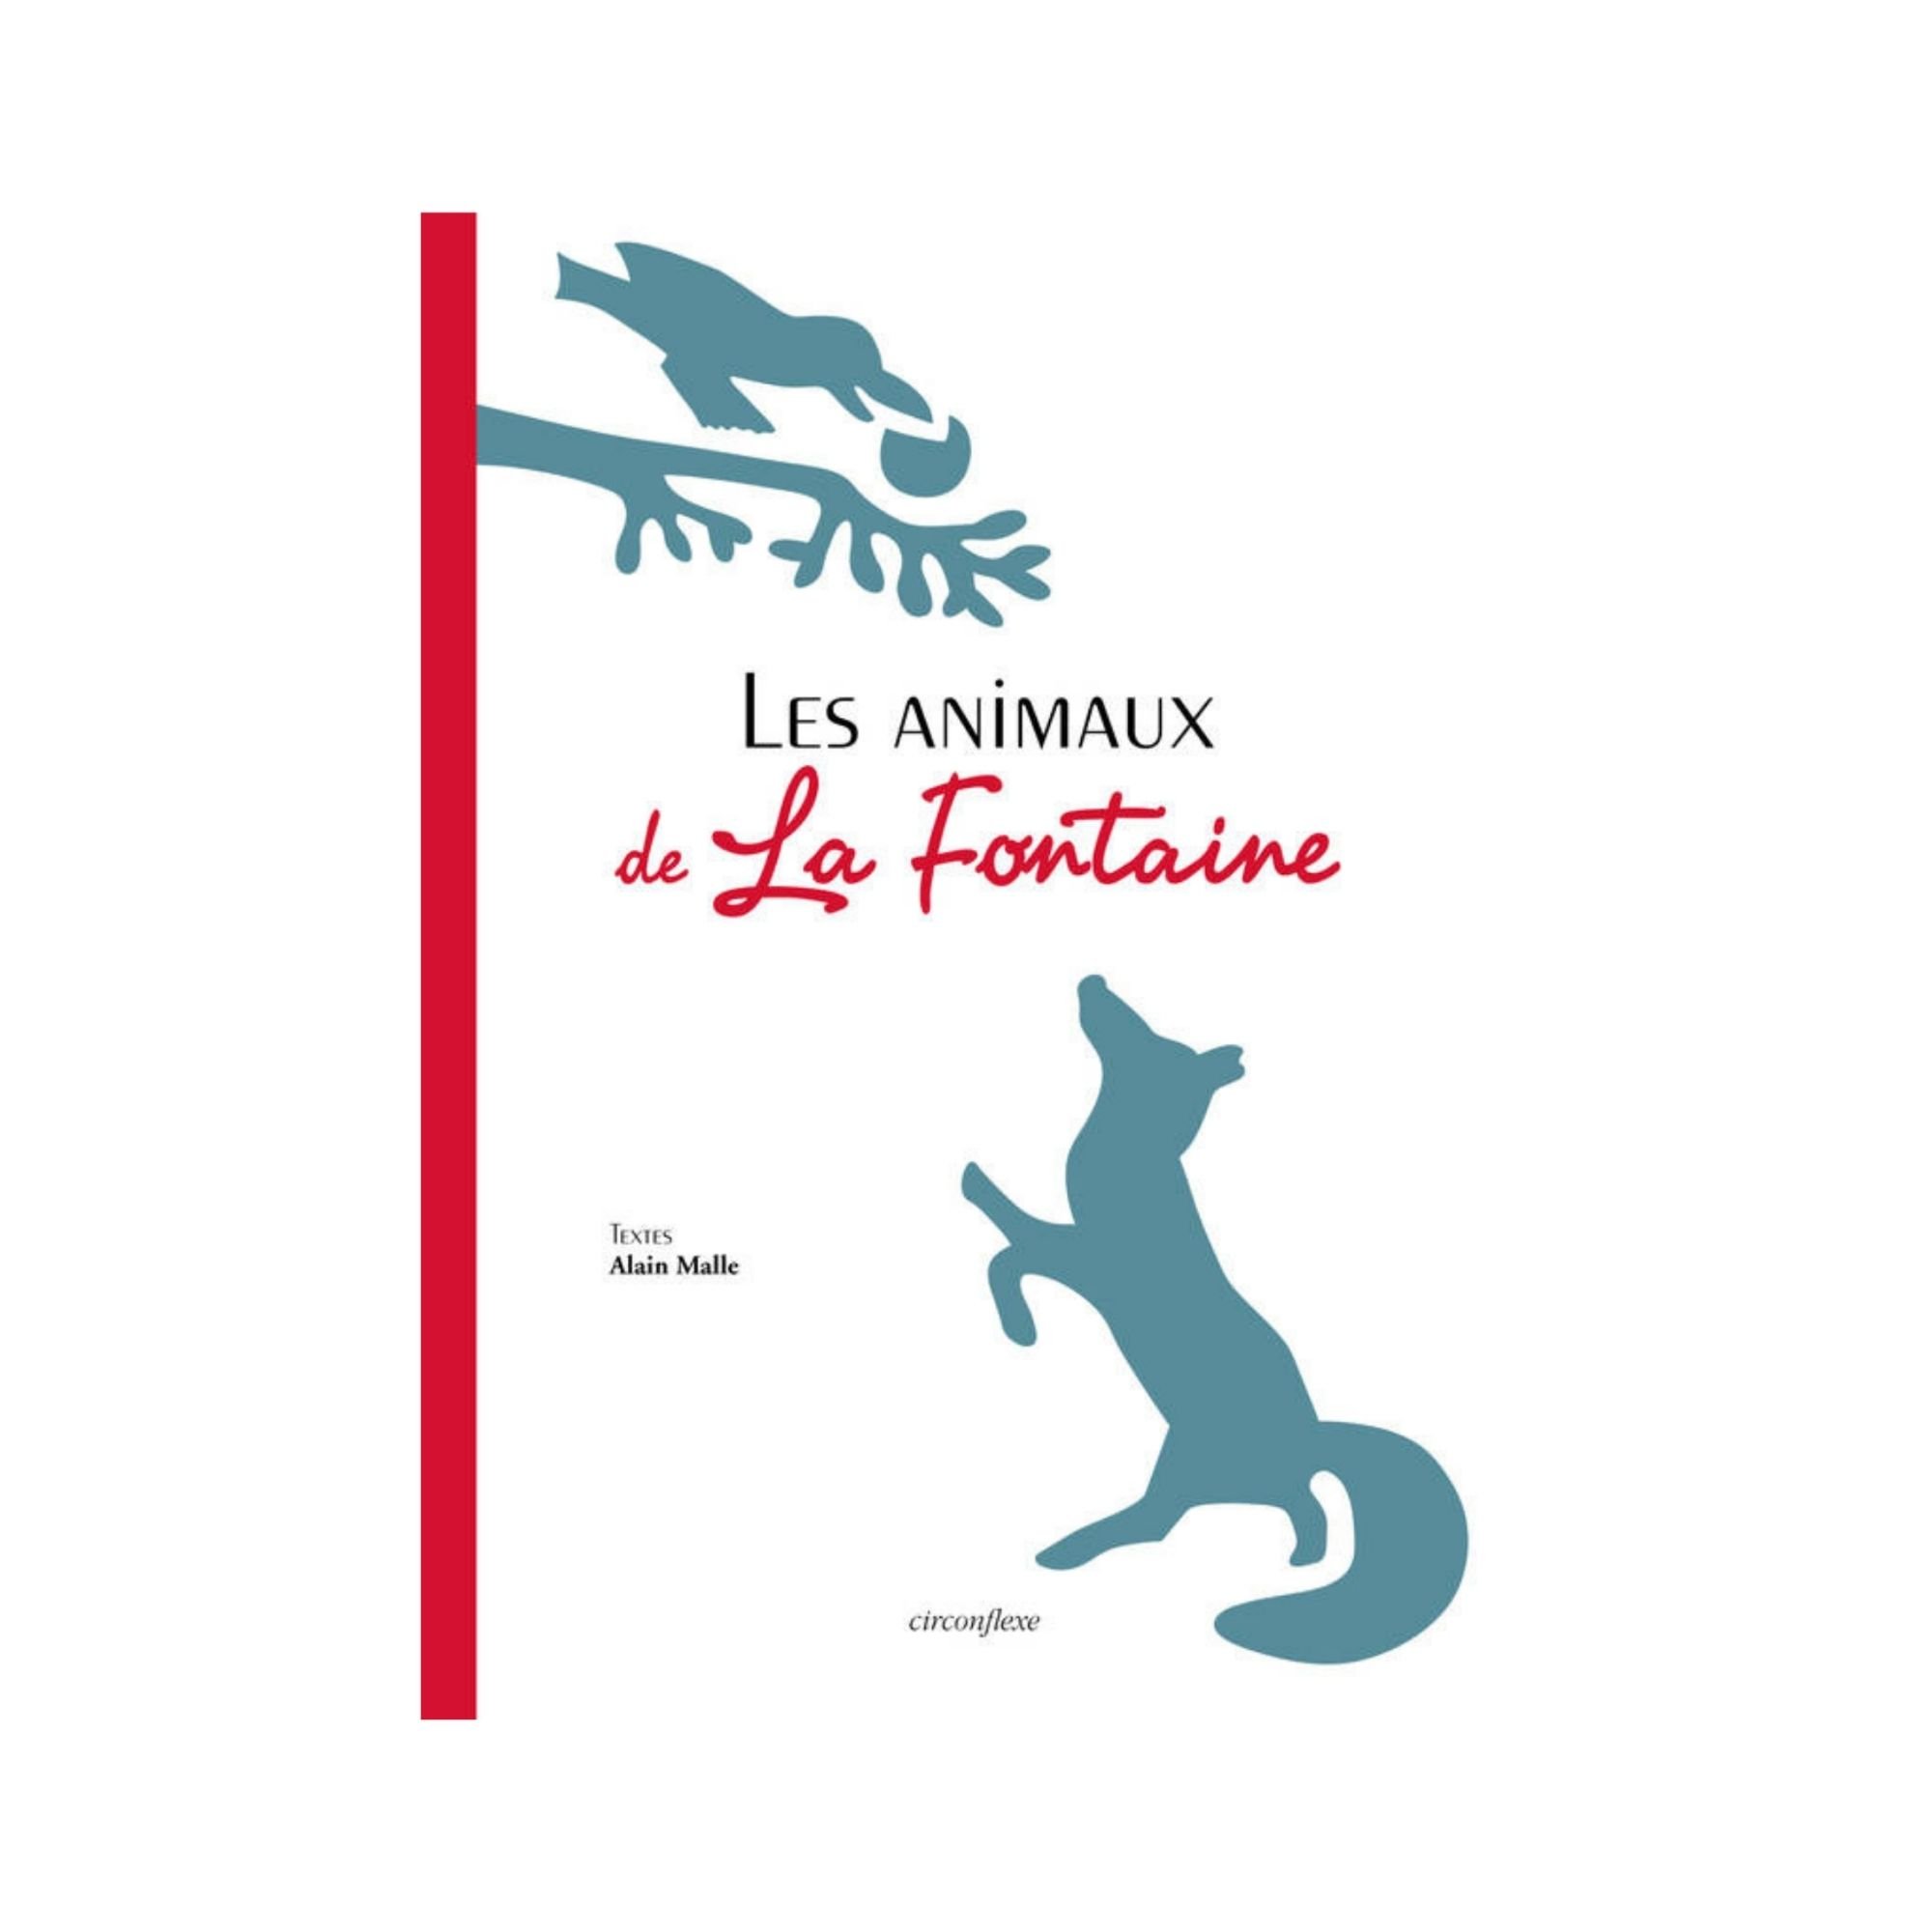 Les animaux de La Fontaine <br>Éditions Circonflexe<br><small>© Musée Jean de La Fontaine - Ville de Château-Thierry</small>